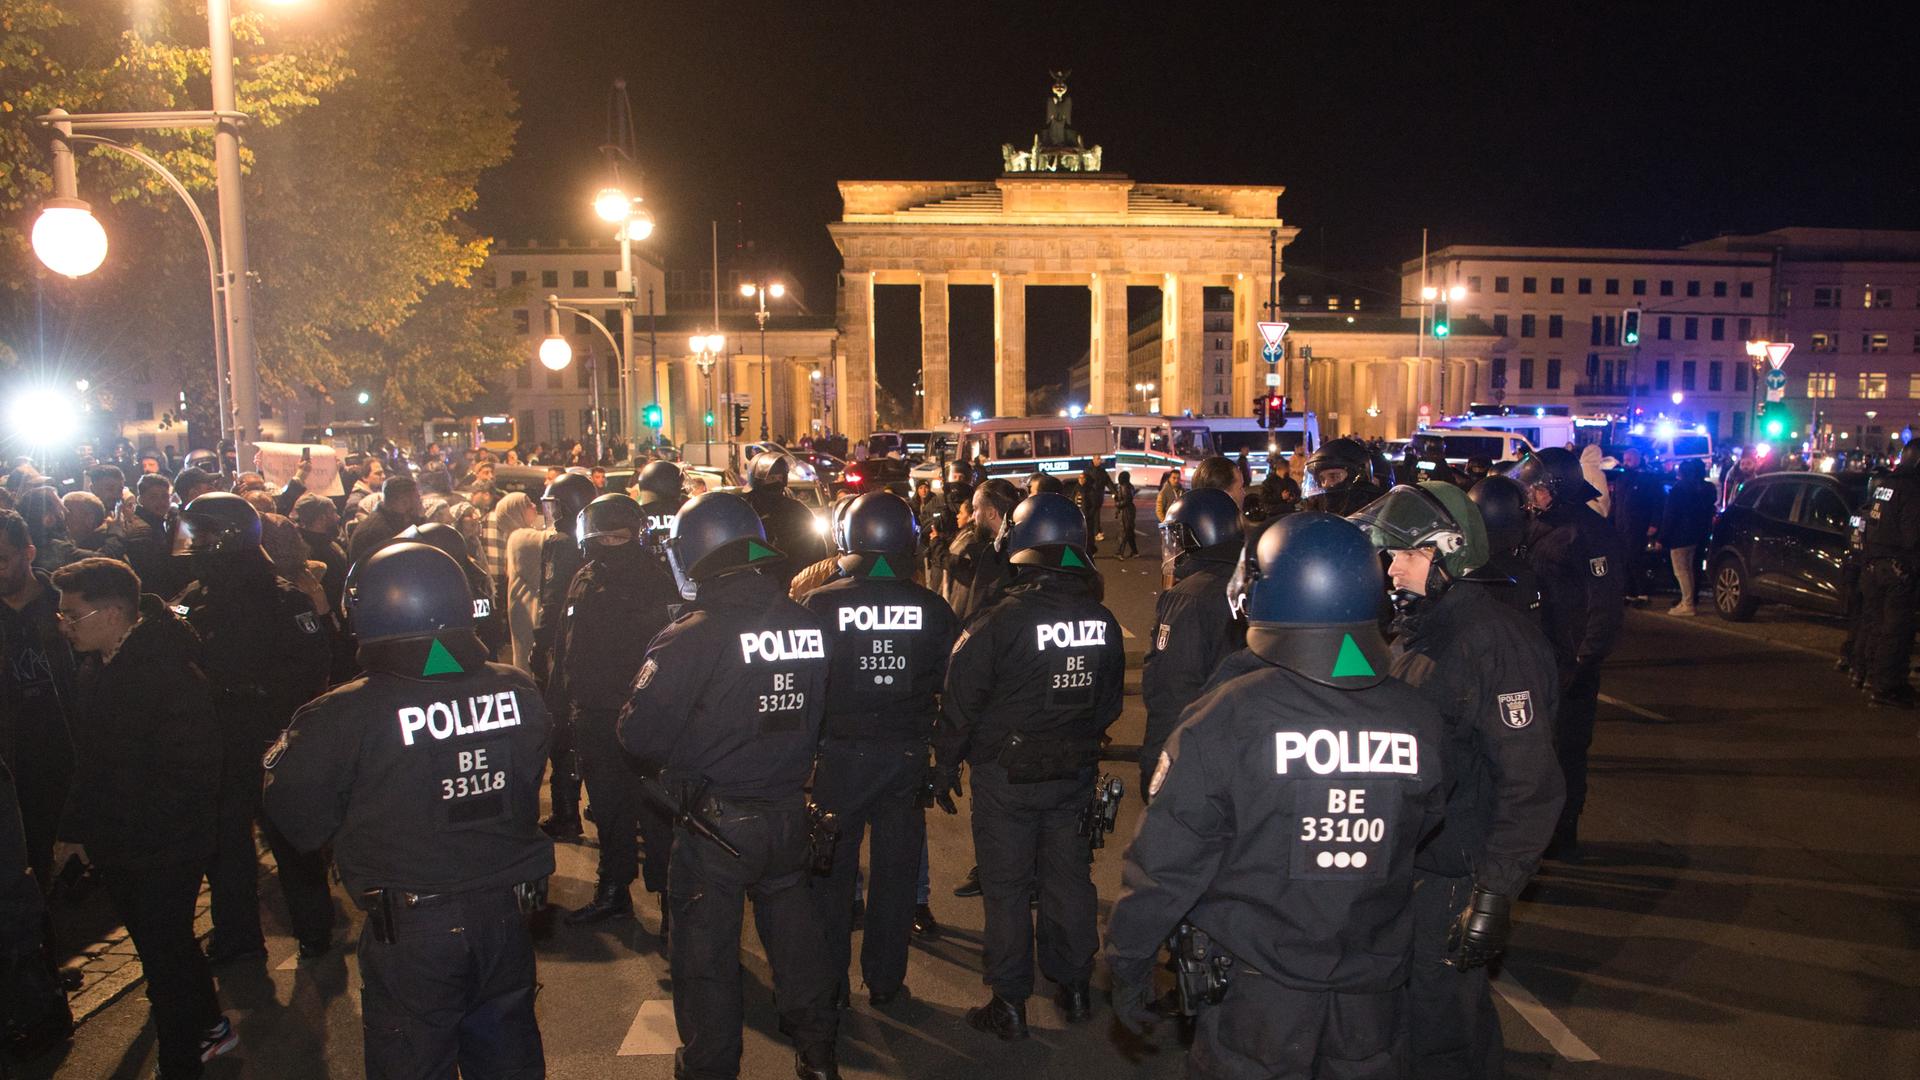 Vor dem Brandenburger Tor in Berlin gibt es eine Pro-Palästina Kundgebung. Auf dem Foto sieht man die Einsatzkräfte der Polizei. Das Brandenburger Tor ist hell erleuchtet.